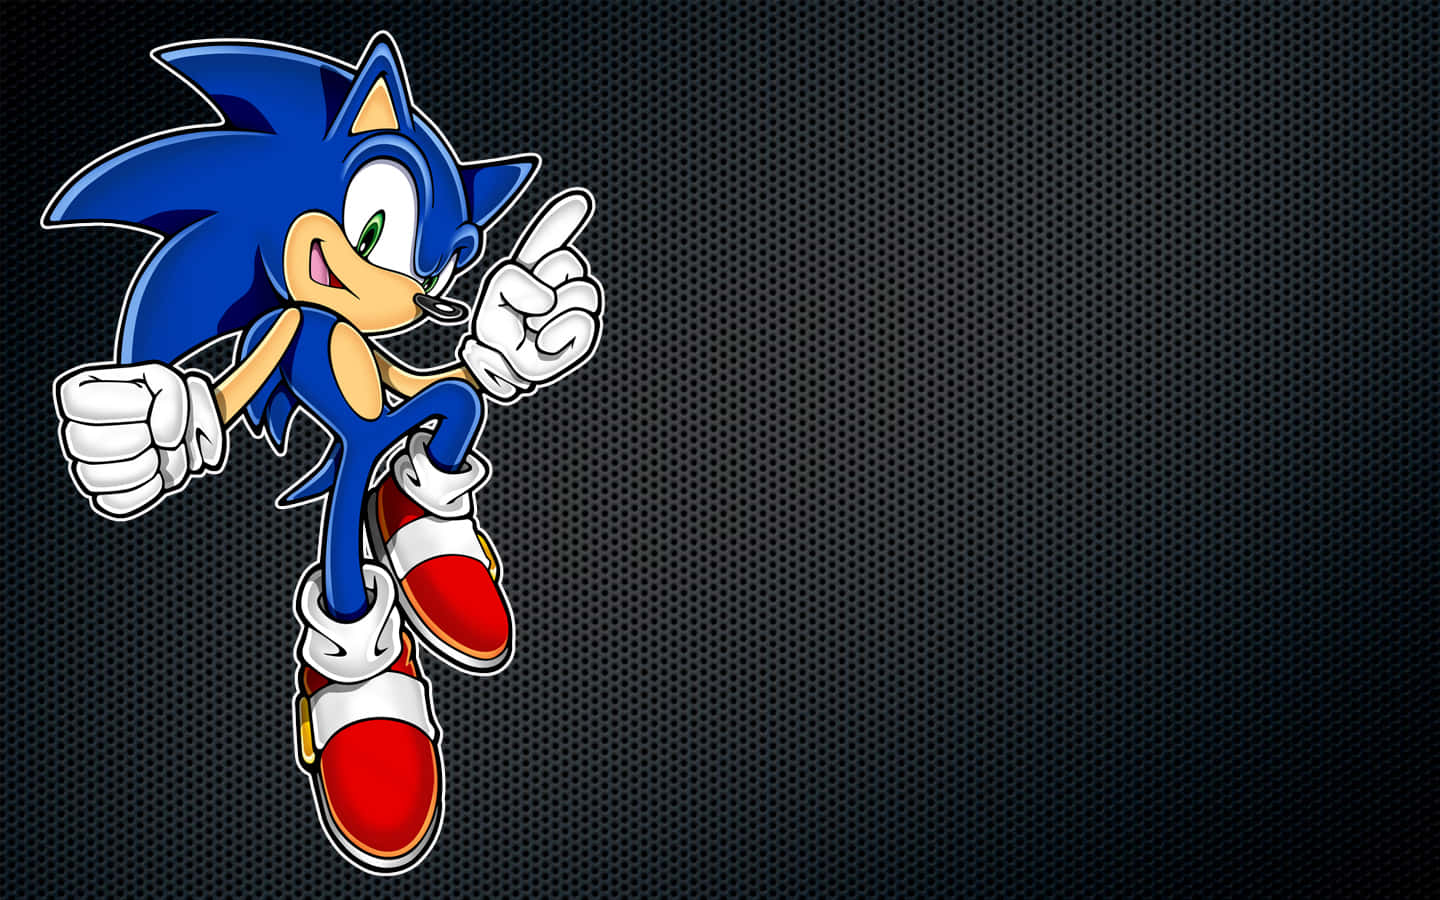 Sonic The Hedgehog, Sonic The Hedgehog, Sonic The Hedgehog, Sonic The Hedgehog, Sonic The